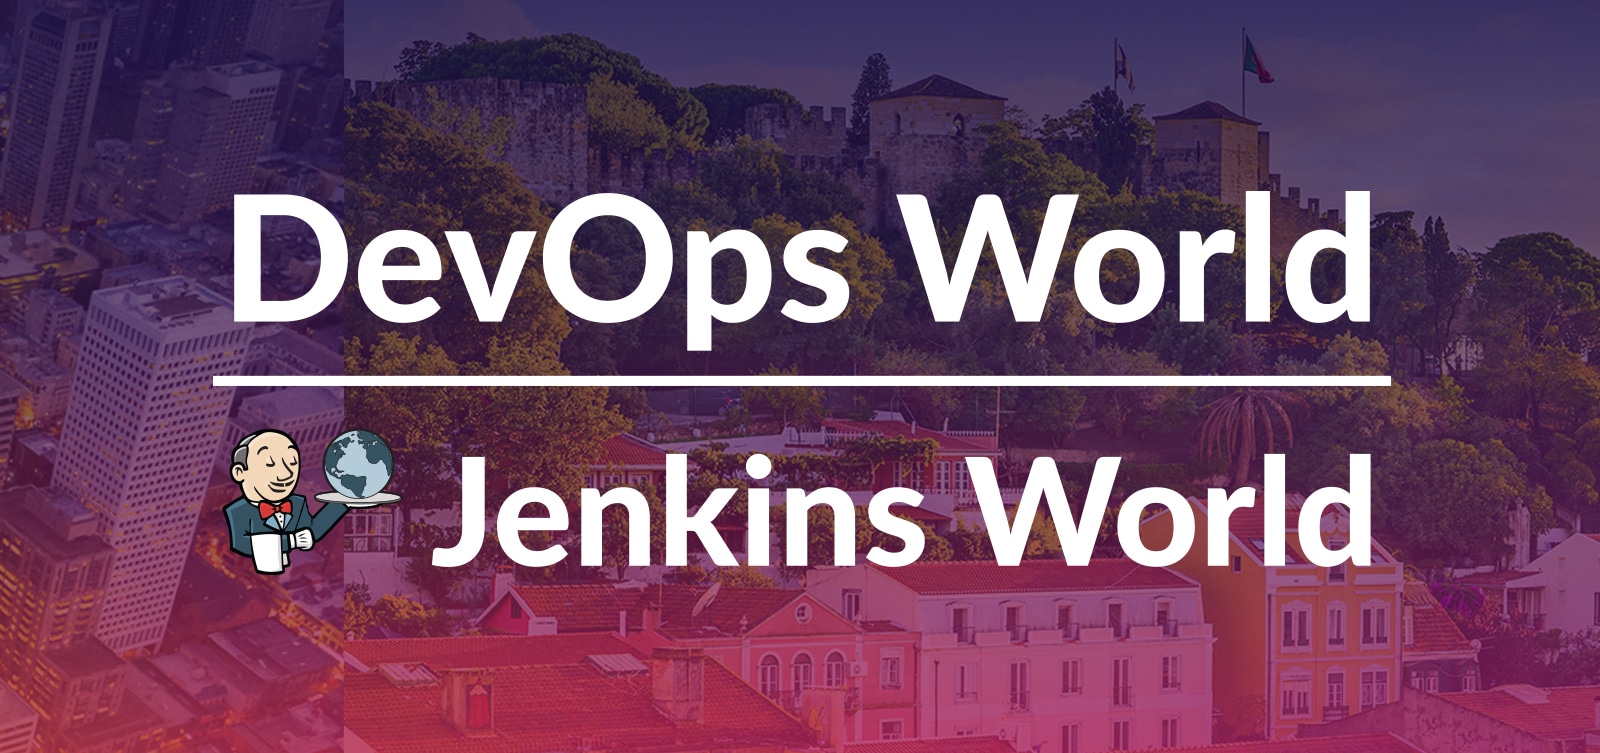 DevOps World / Jenkins World